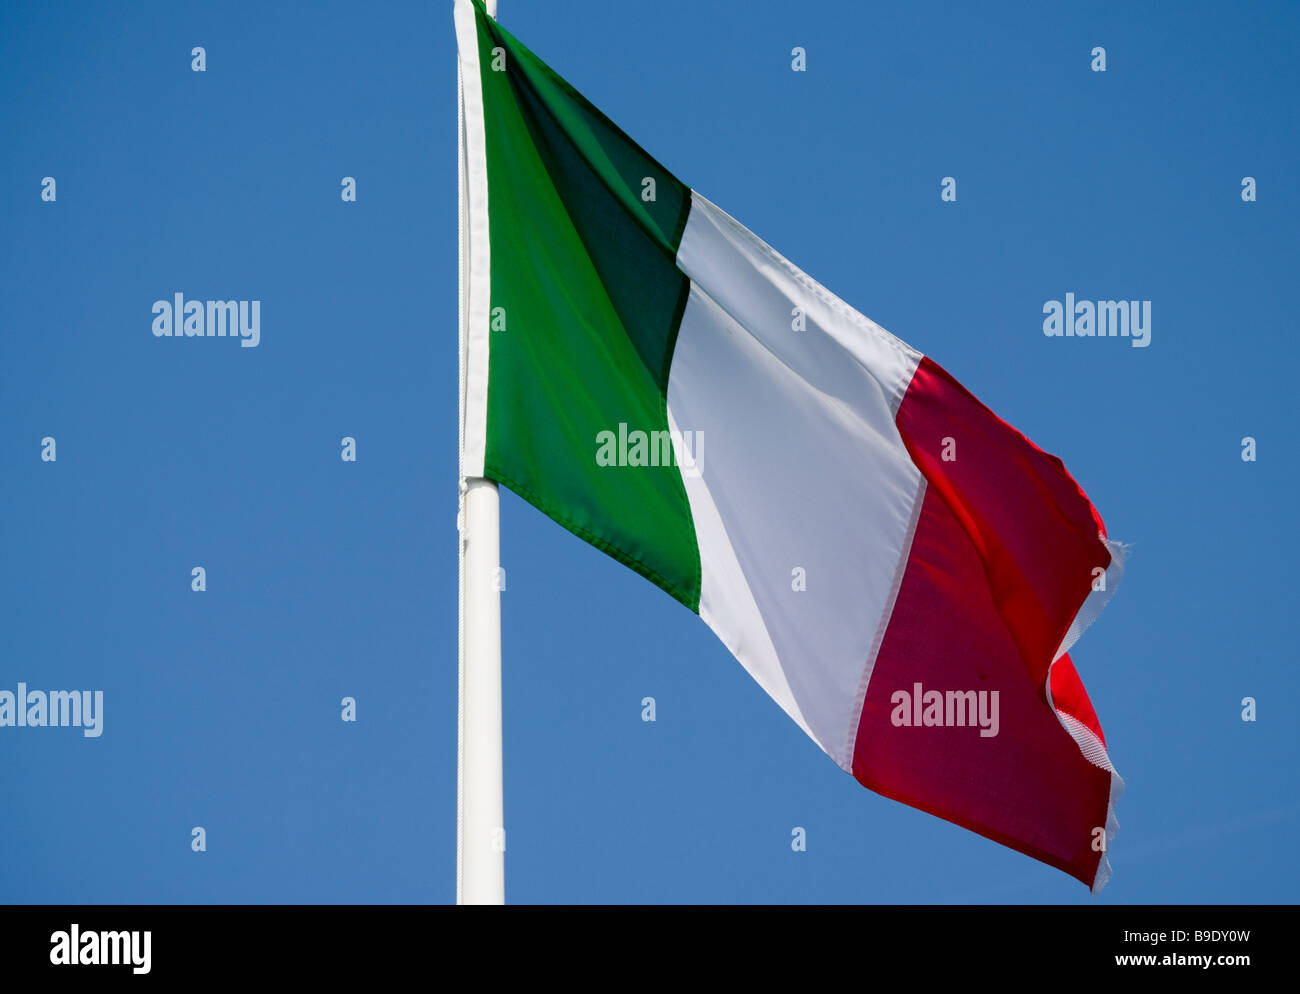 Drapeau tricolore tricolore italien contre un ciel bleu Banque D'Images